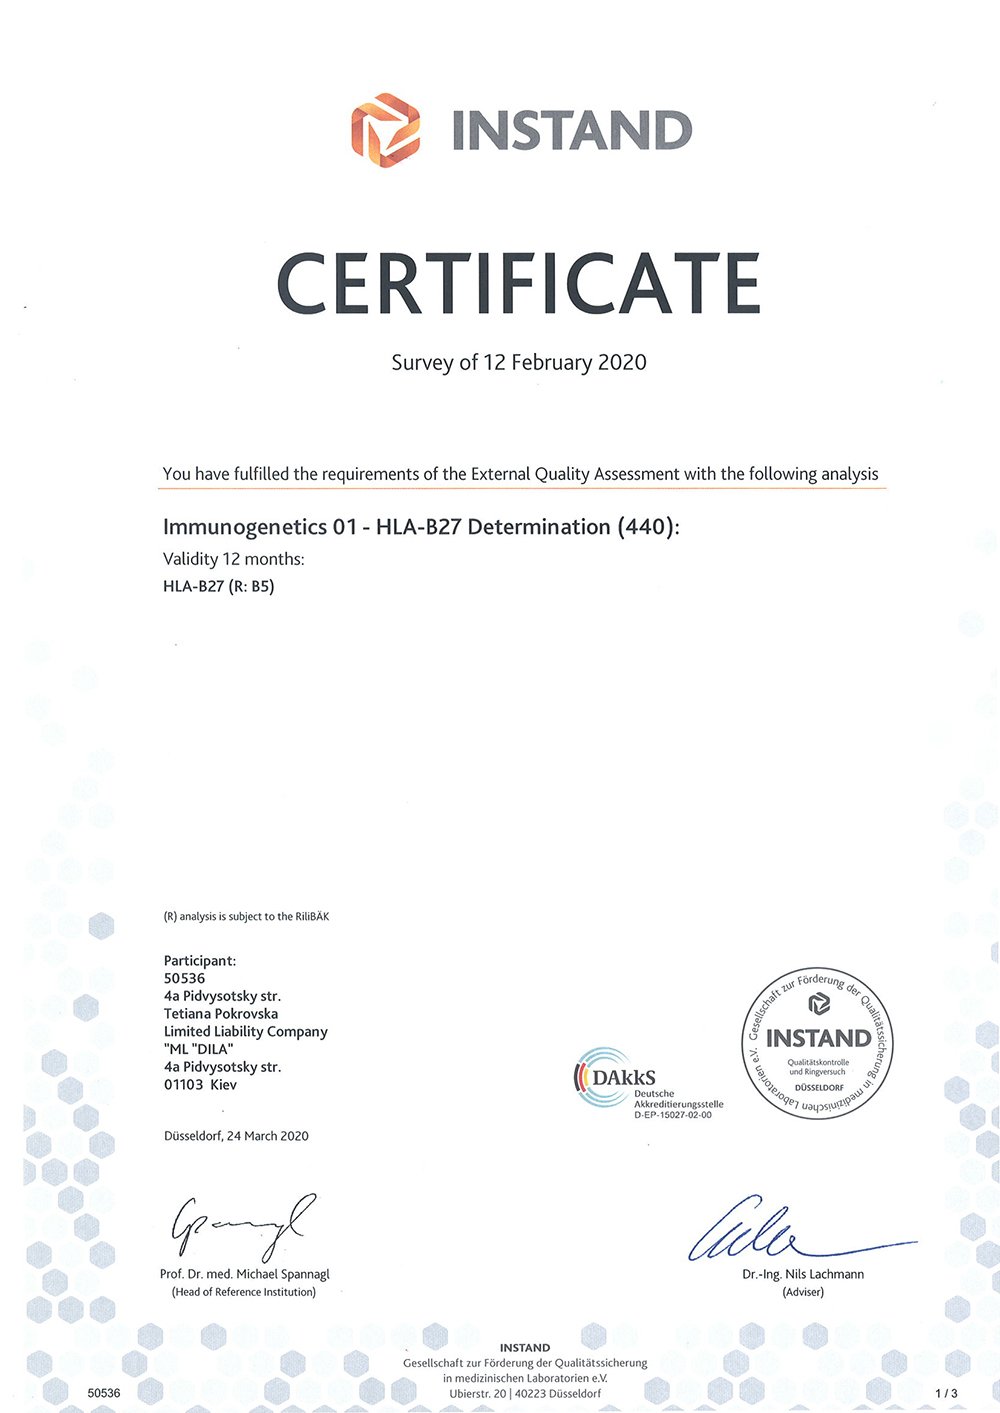 Фото - Сертифікат про успішне проходження зовнішньої оцінки якості за системою INSTAND e.v (Німеччина). Immunogenetics - HLA-B27 determination